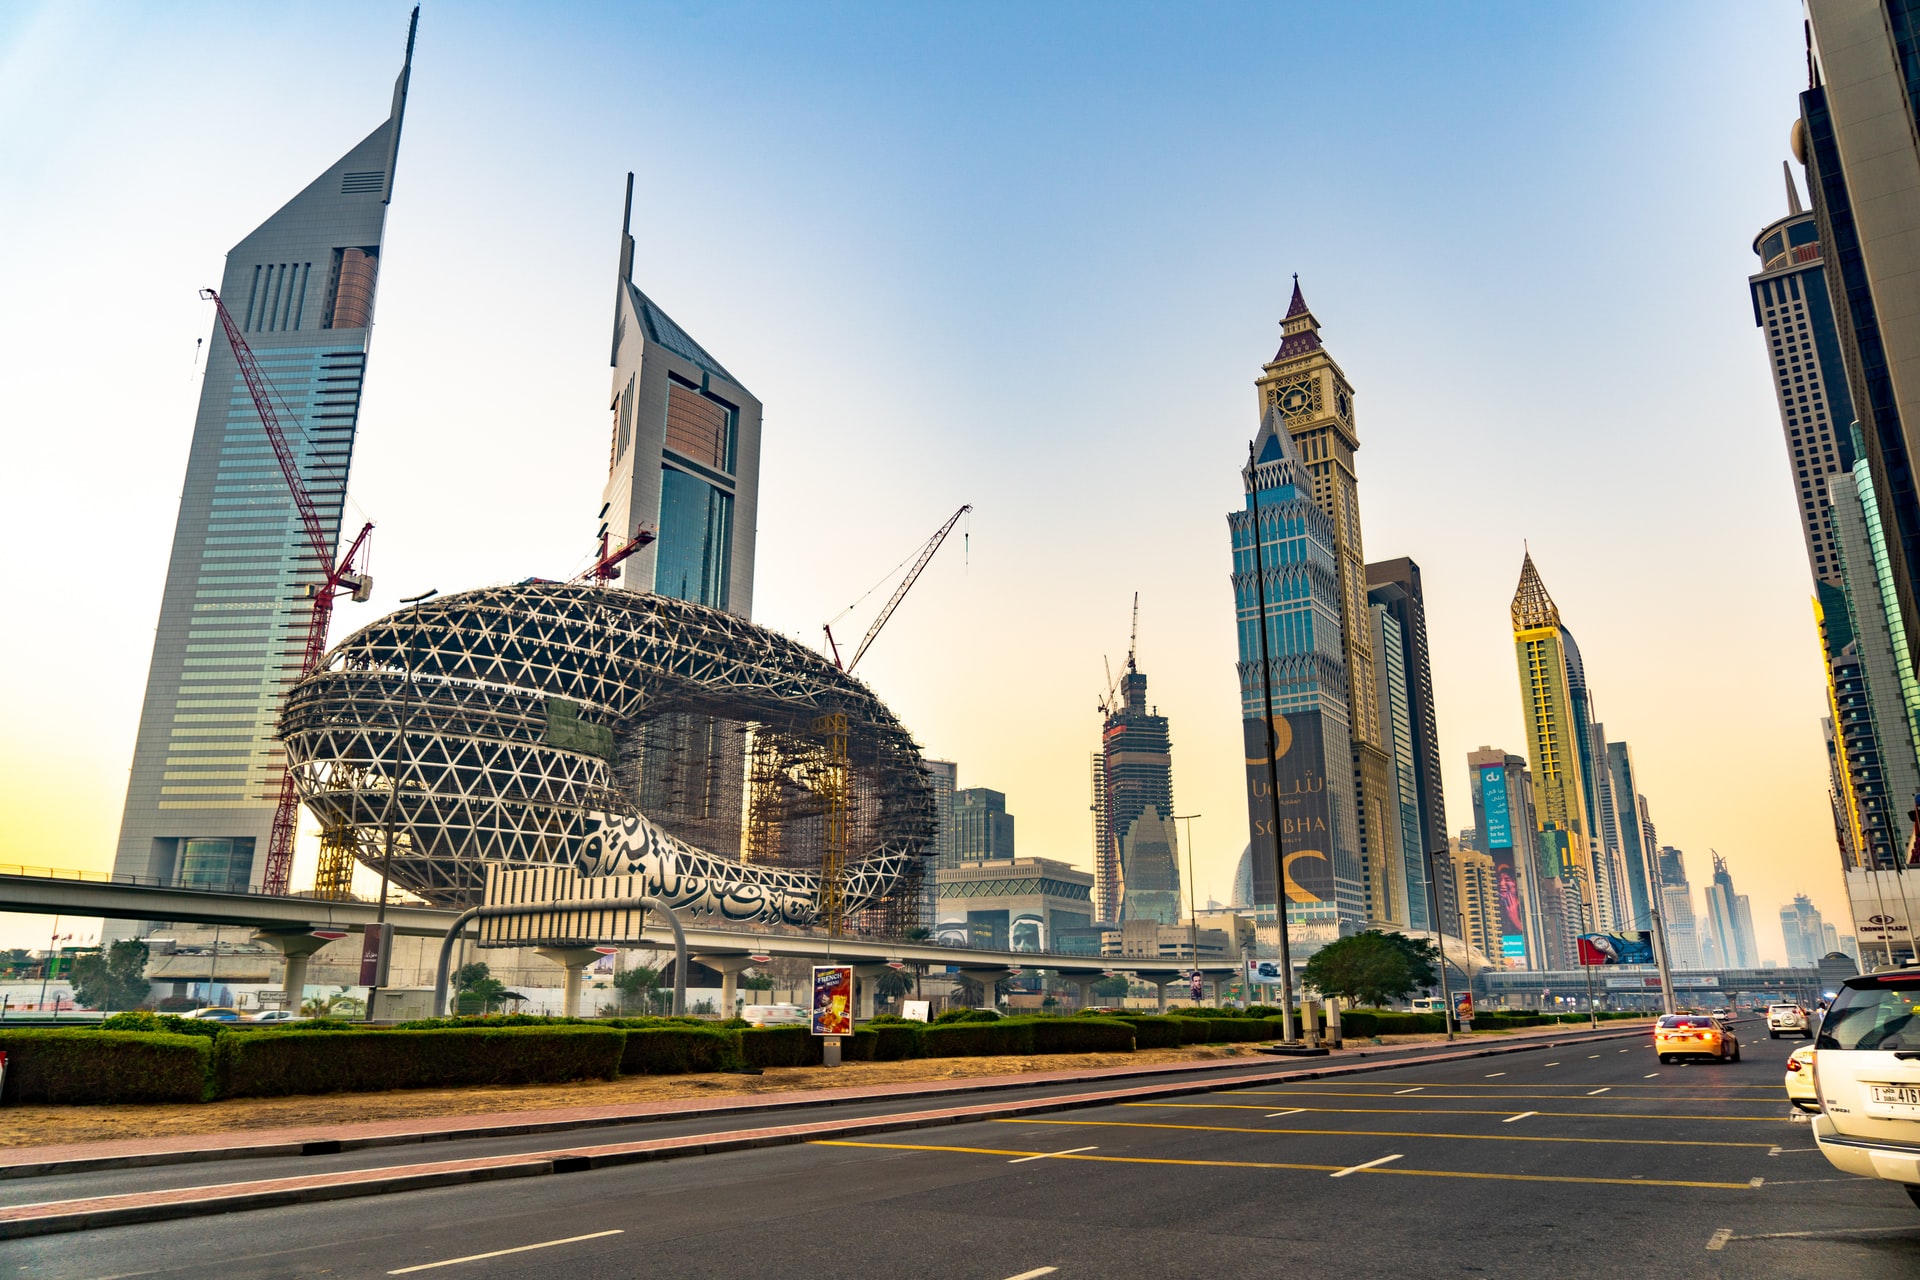 10 Top Training Institutes in Dubai